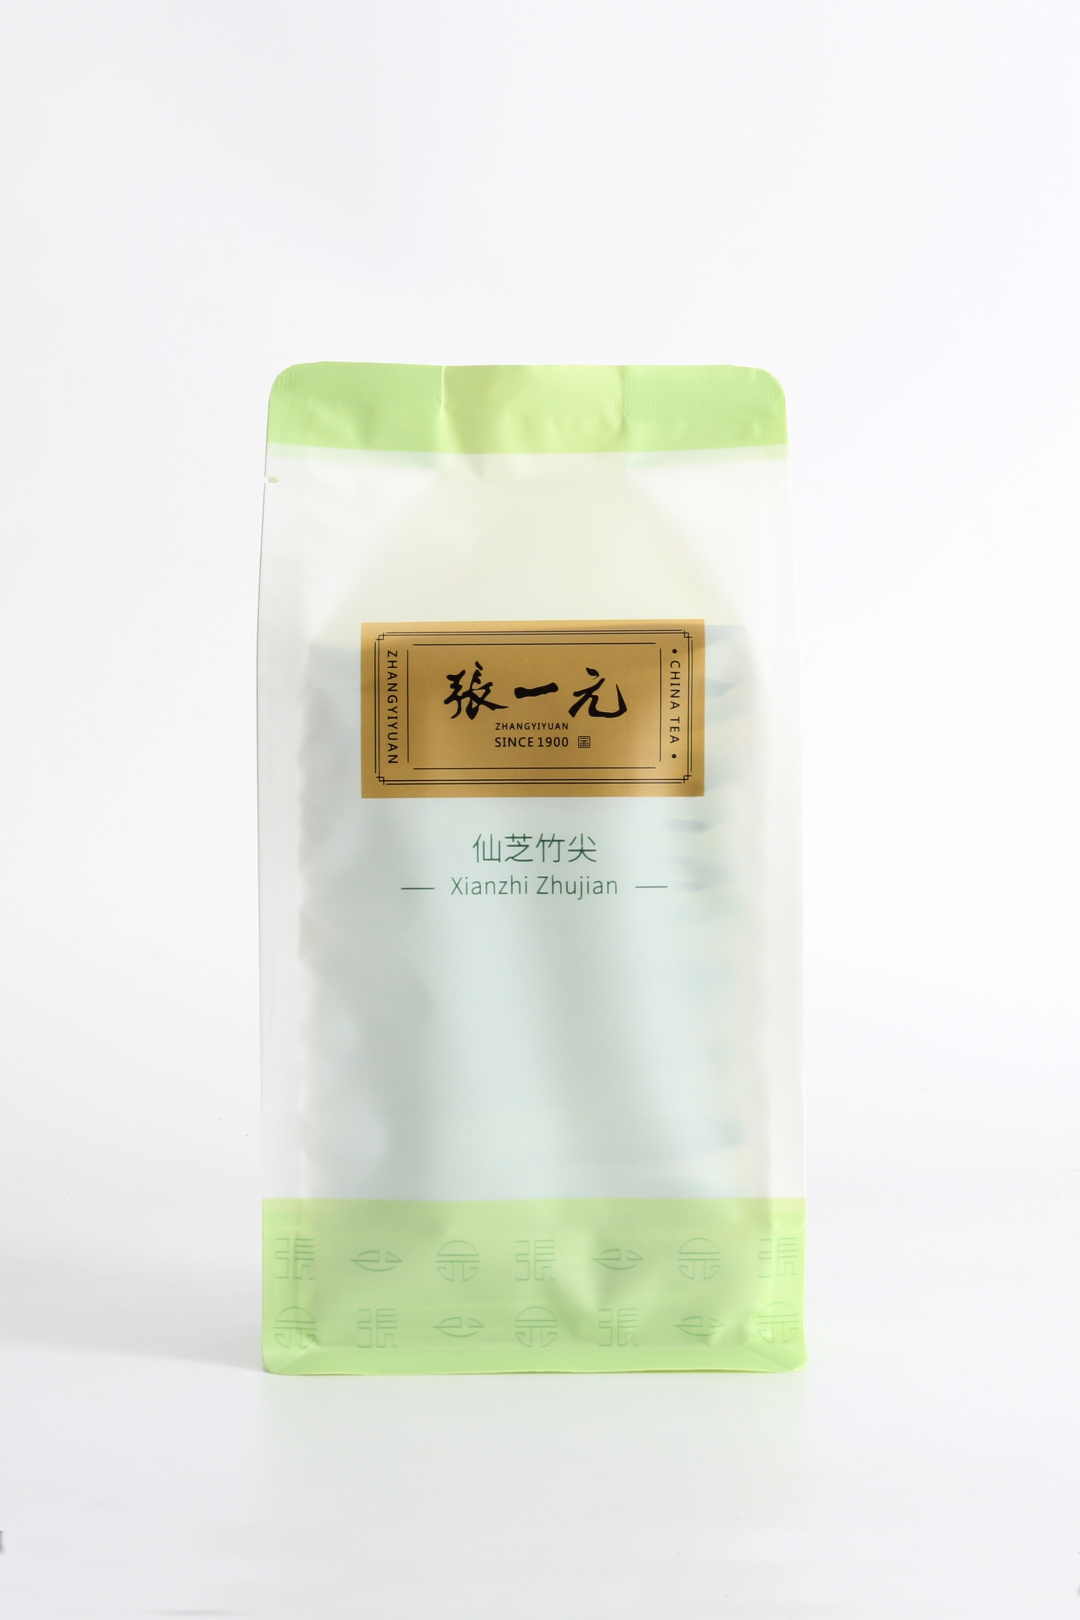 【绿茶展卖季 包邮】张一元茶叶 经典系列 绿茶 仙芝竹尖 袋装 80g